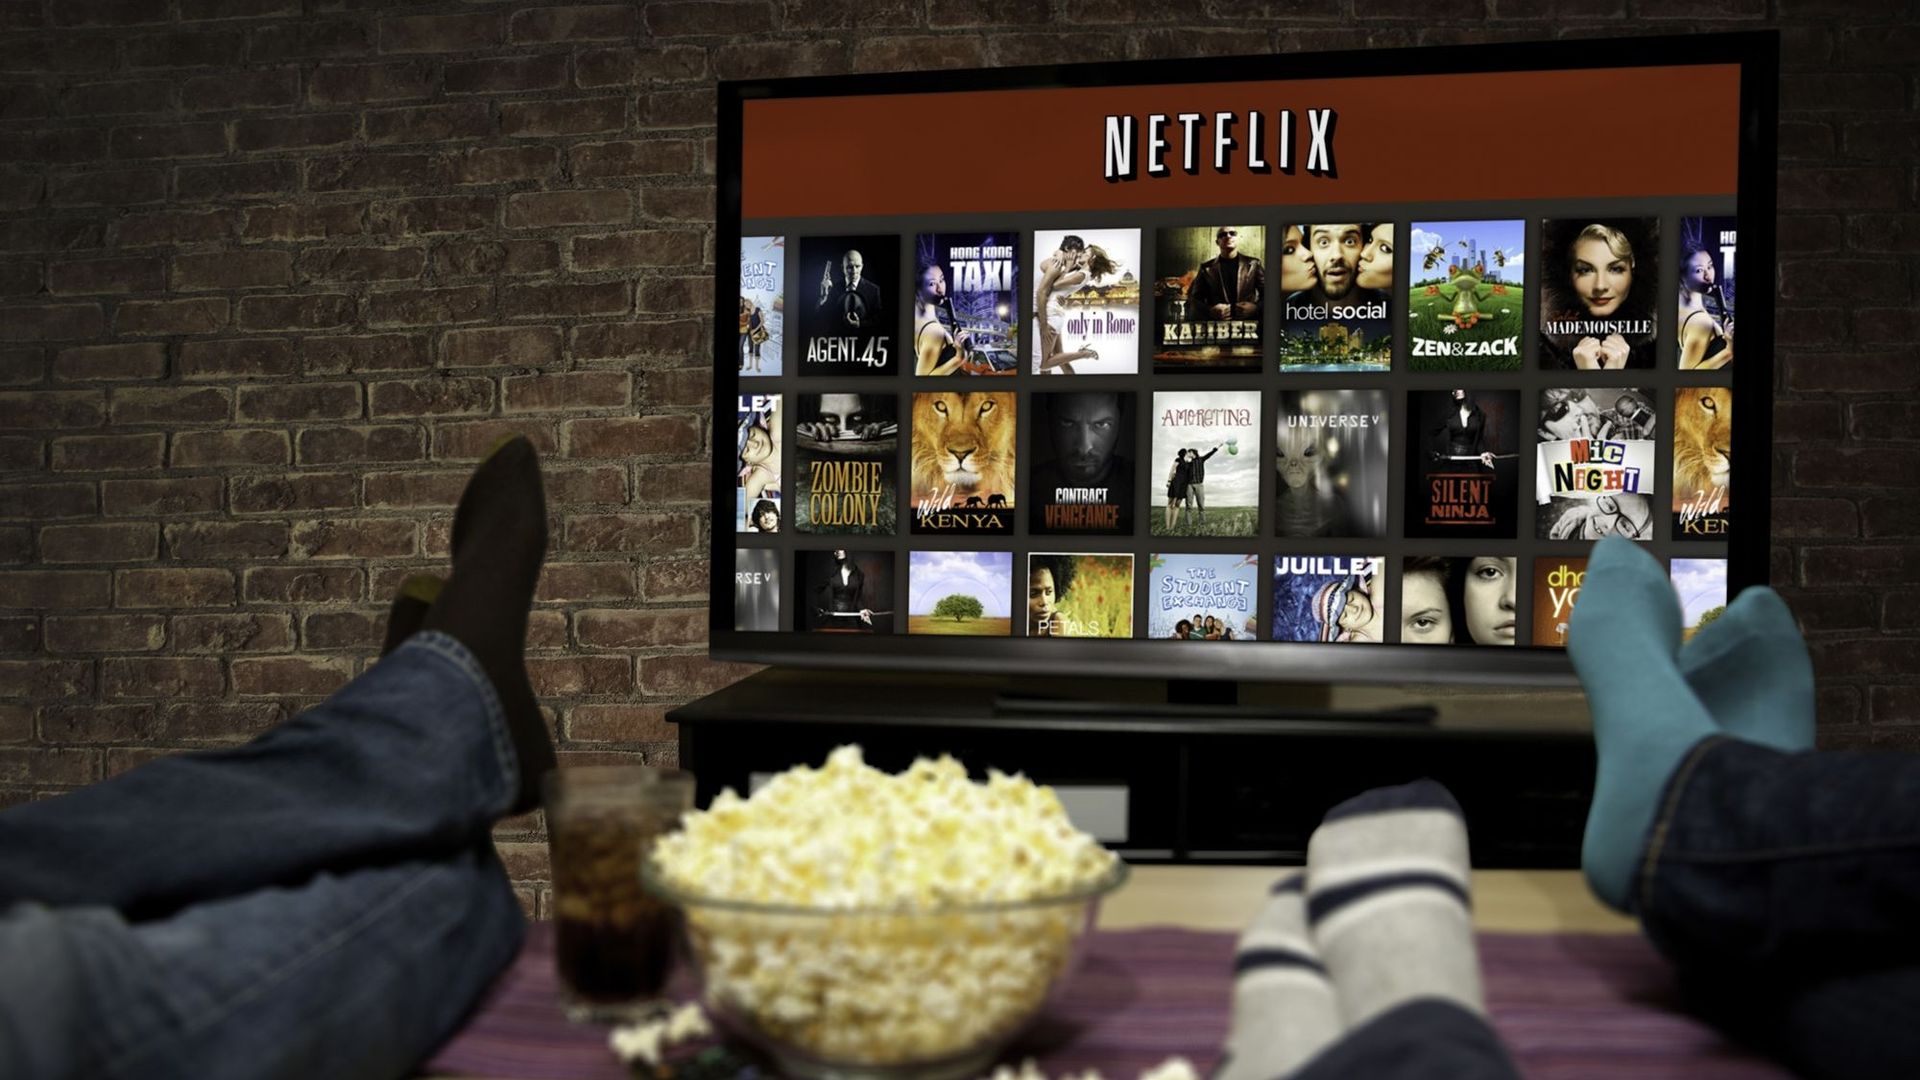 La première offre Netflix pour la France doit être dévoilée en septembre 2014